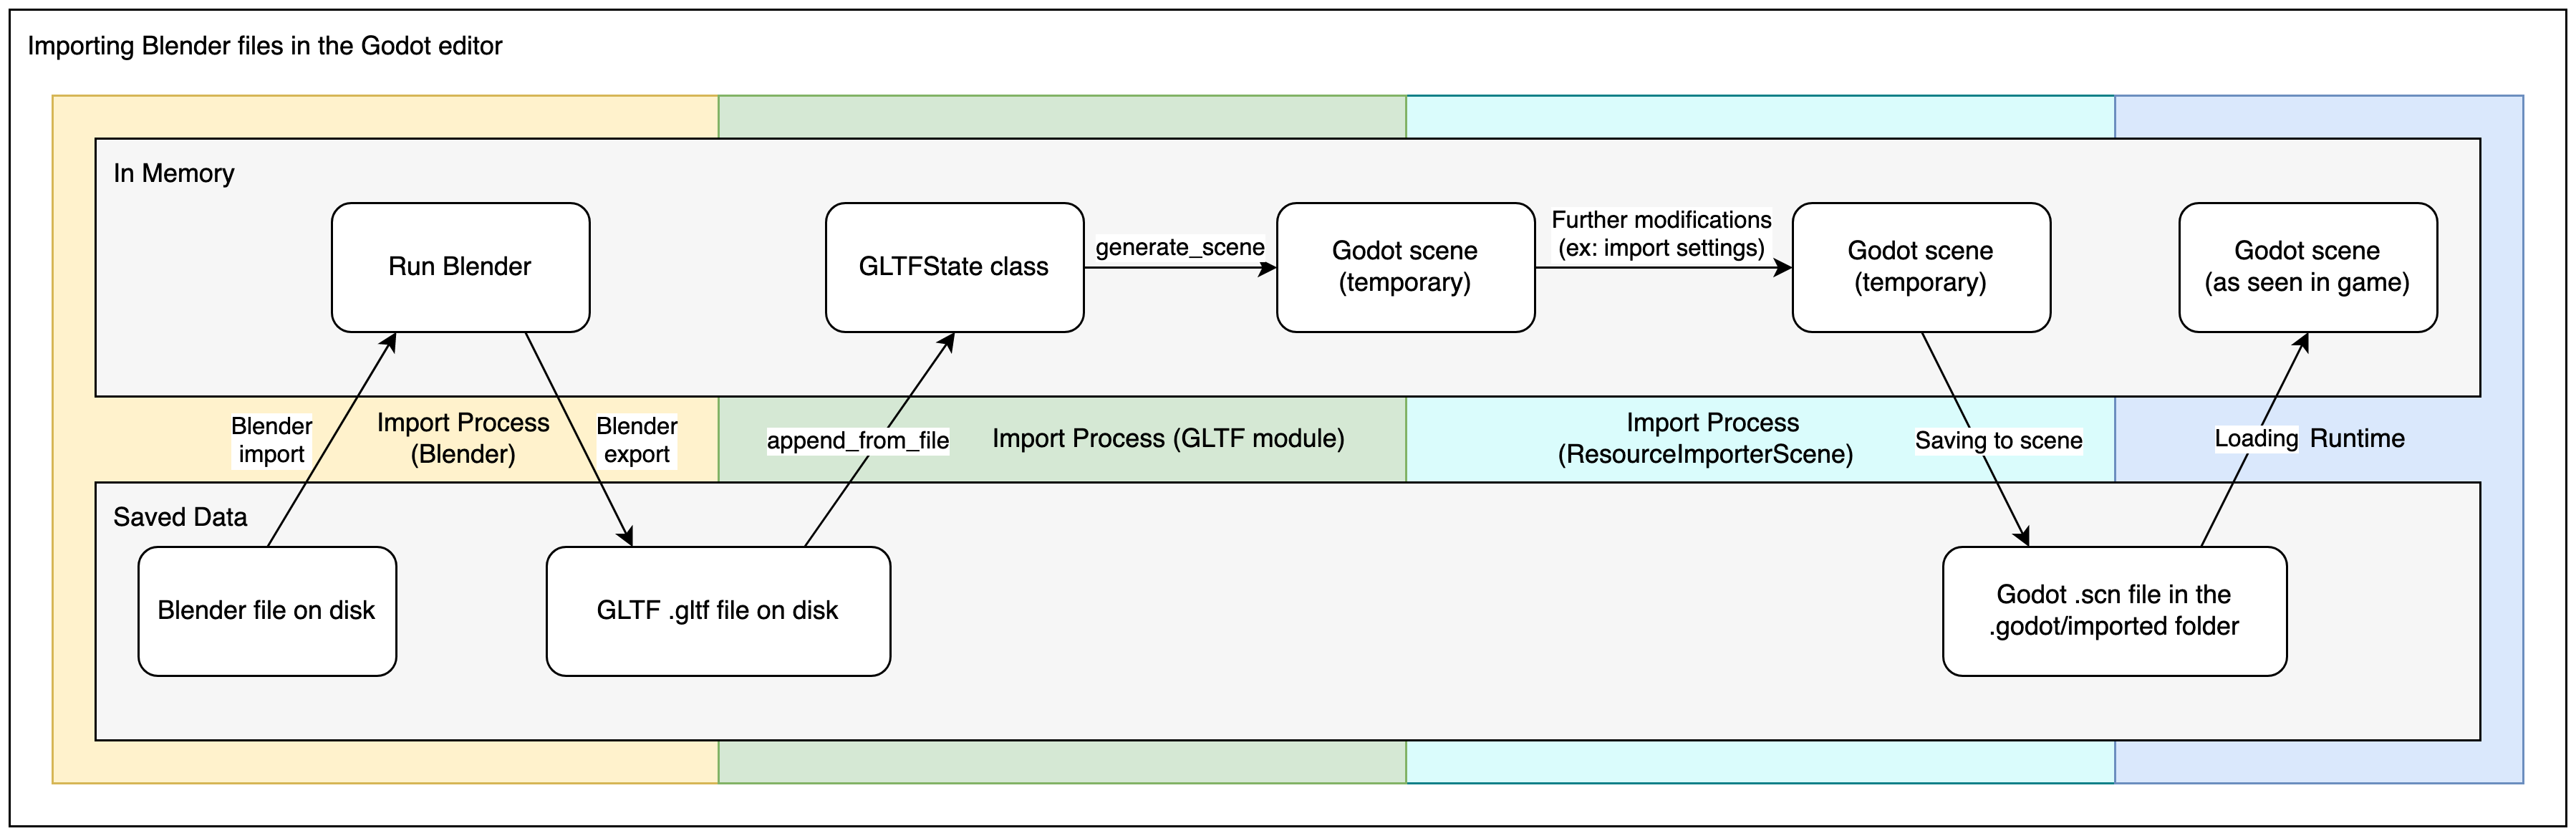 Diagramm zur Erläuterung des Importprozesses für Blender-Dateien in Godot